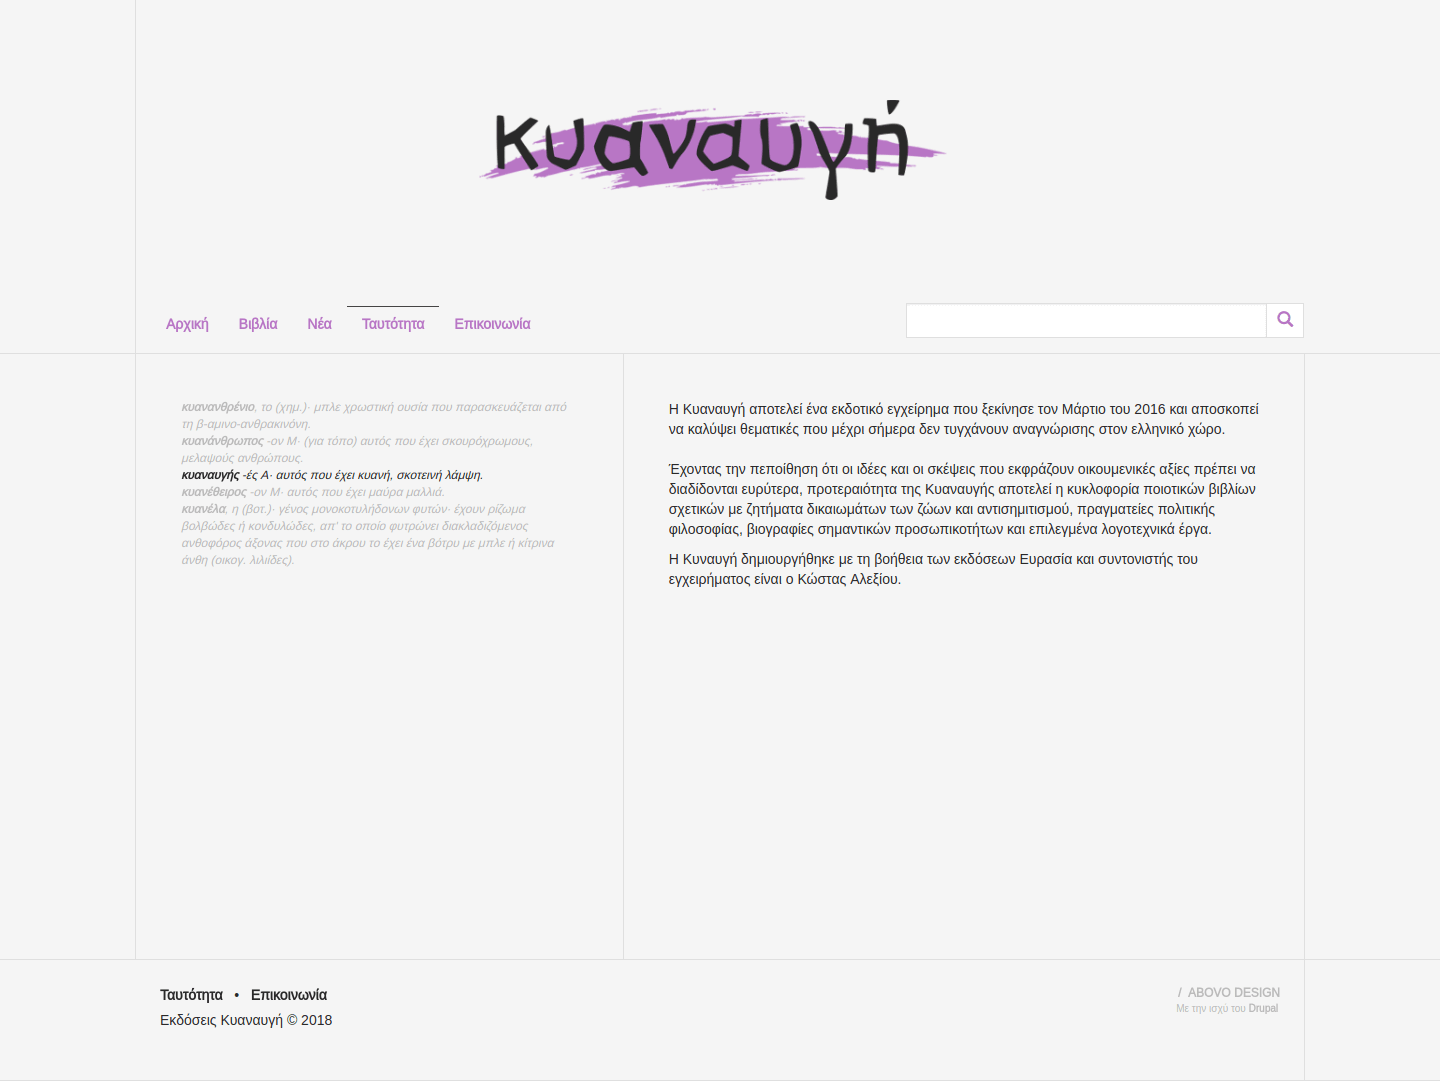 Η σελίδα πληροφοριών του ιστοτόπου της Κυαναυγής